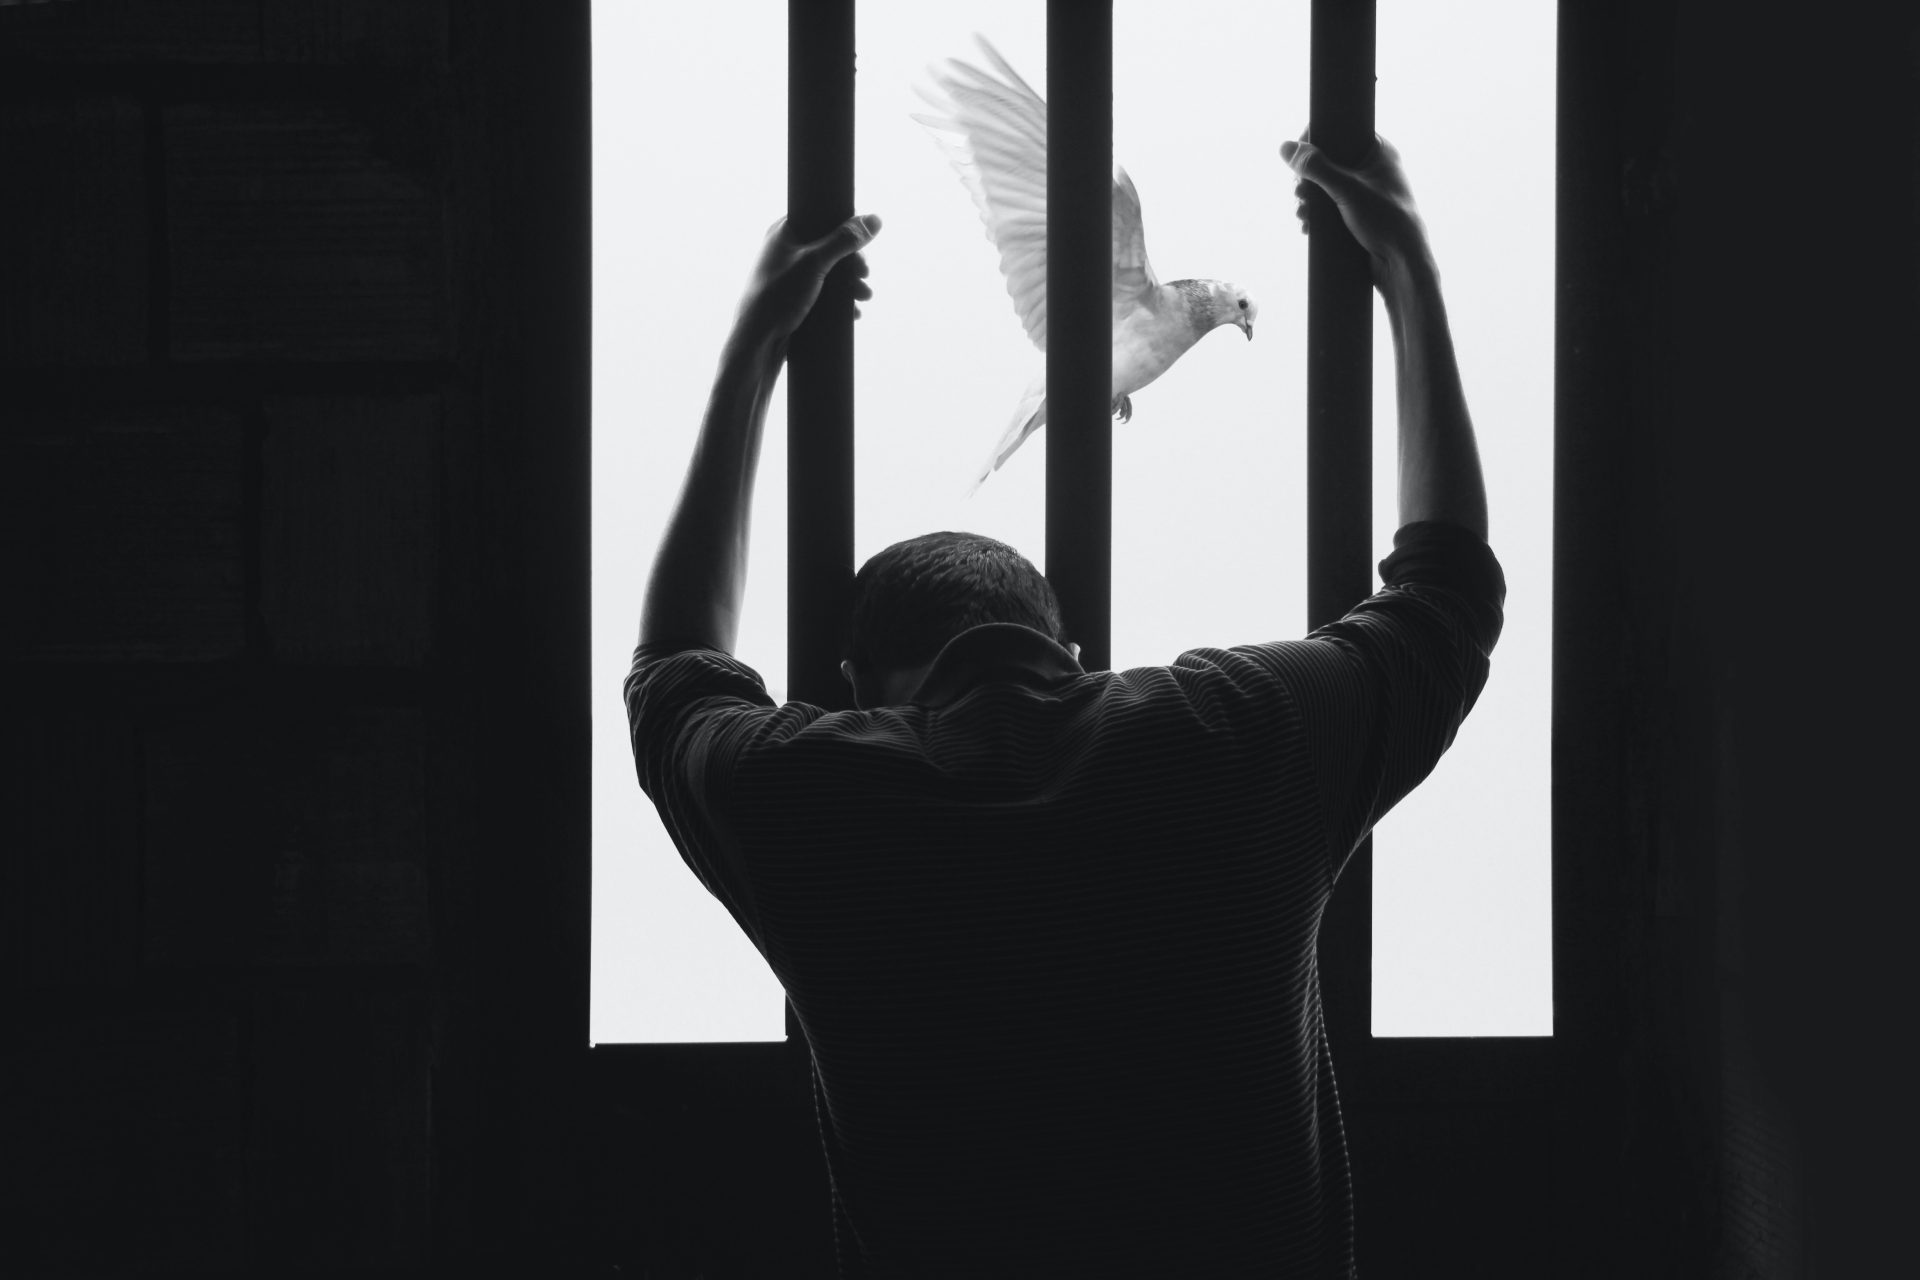 Foto in bianco e nero con una persona detenuta vista da dietro che si aggrappa alle sbarre, oltre le sbarre una colomba